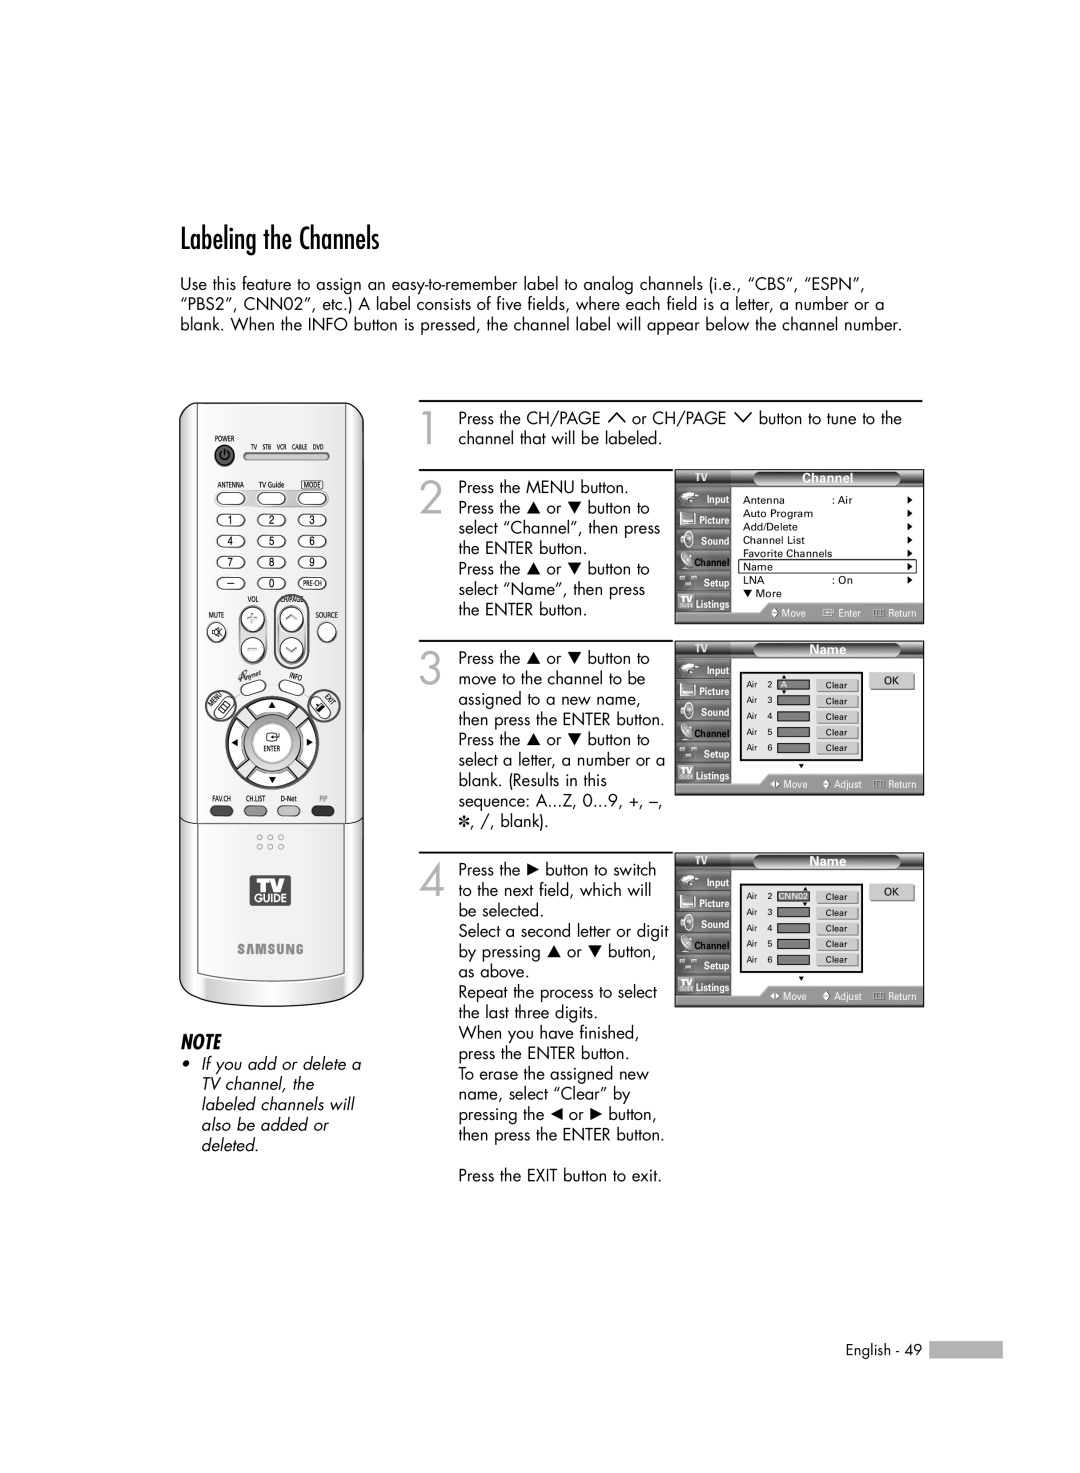 Samsung HL-R5678W, HL-R6178W, HL-R7178W manual Labeling the Channels 